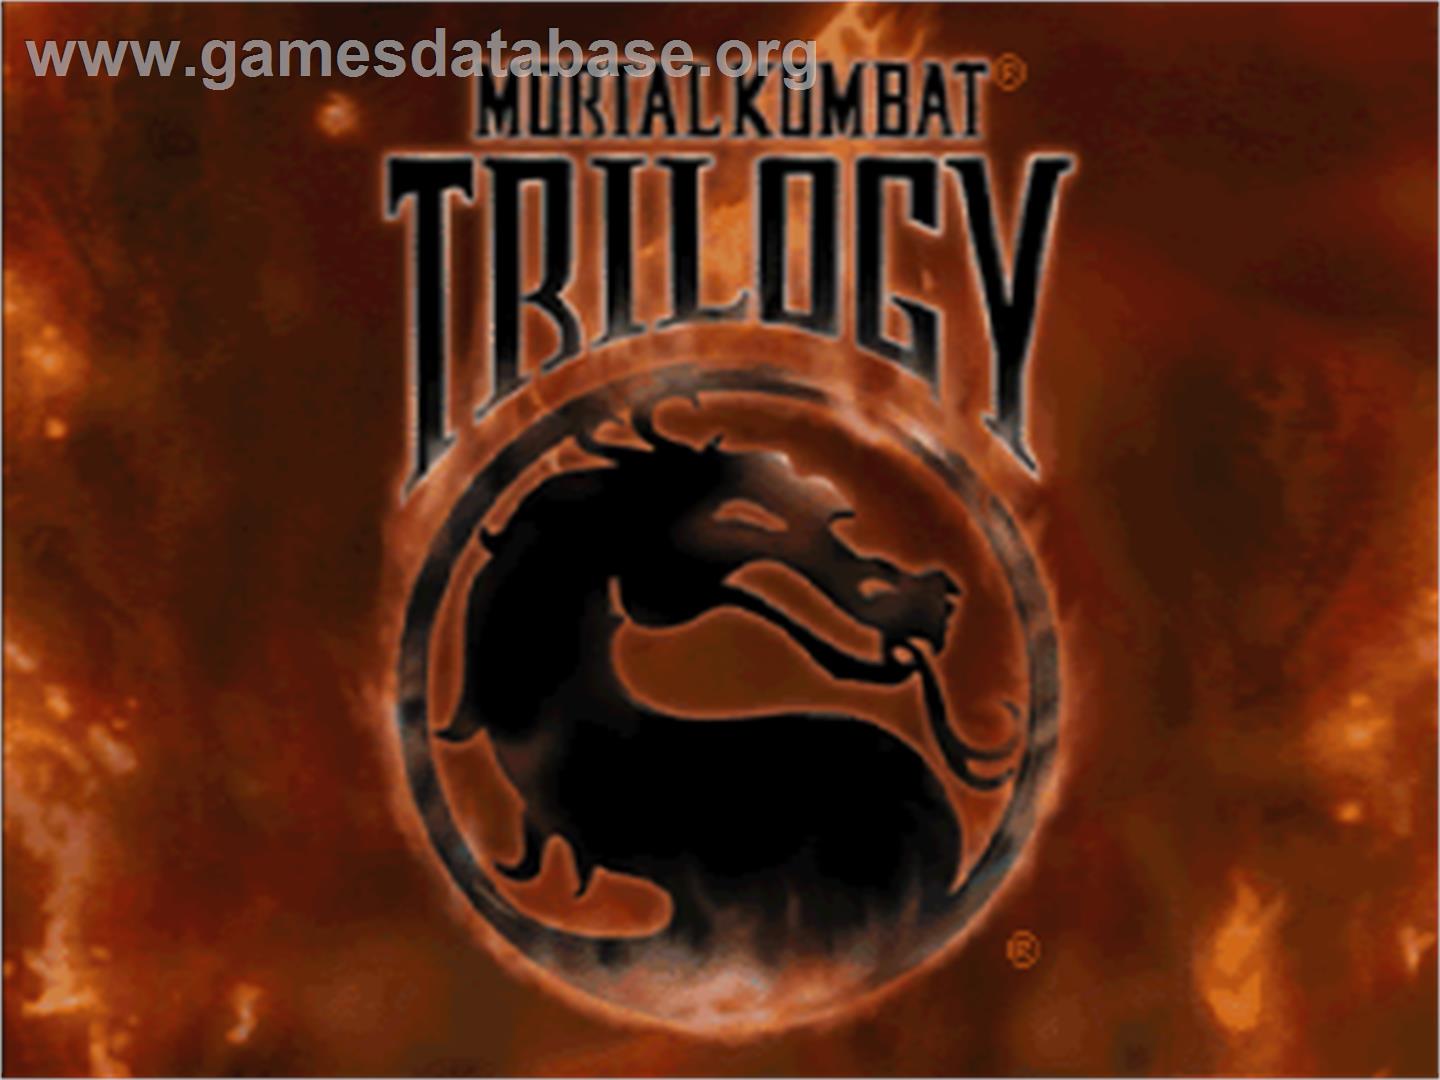 Mortal Kombat Trilogy - Sega Saturn - Artwork - Title Screen